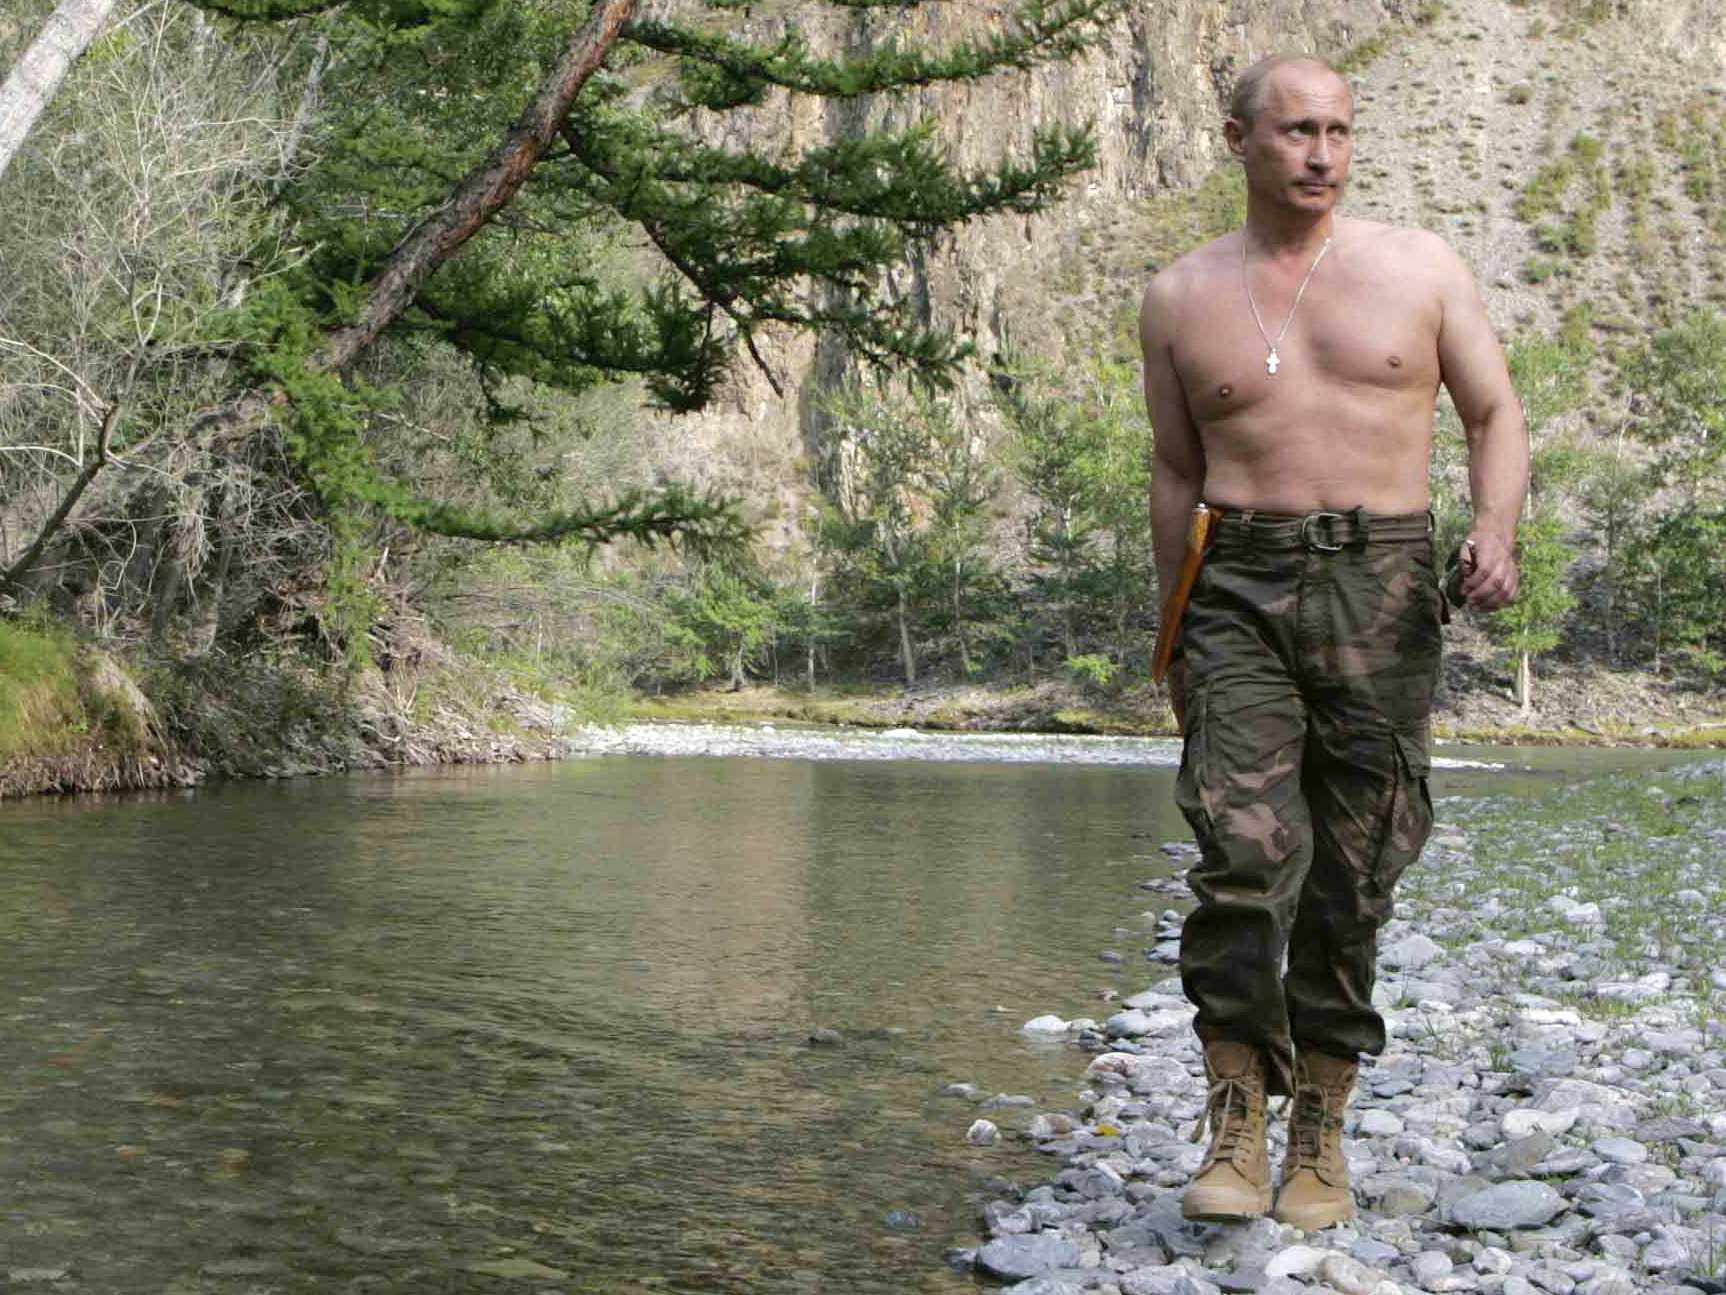 Putin üstsüz fotoğrafları hakkında konuştu: Saklanmaya gerek yok | Haberrus